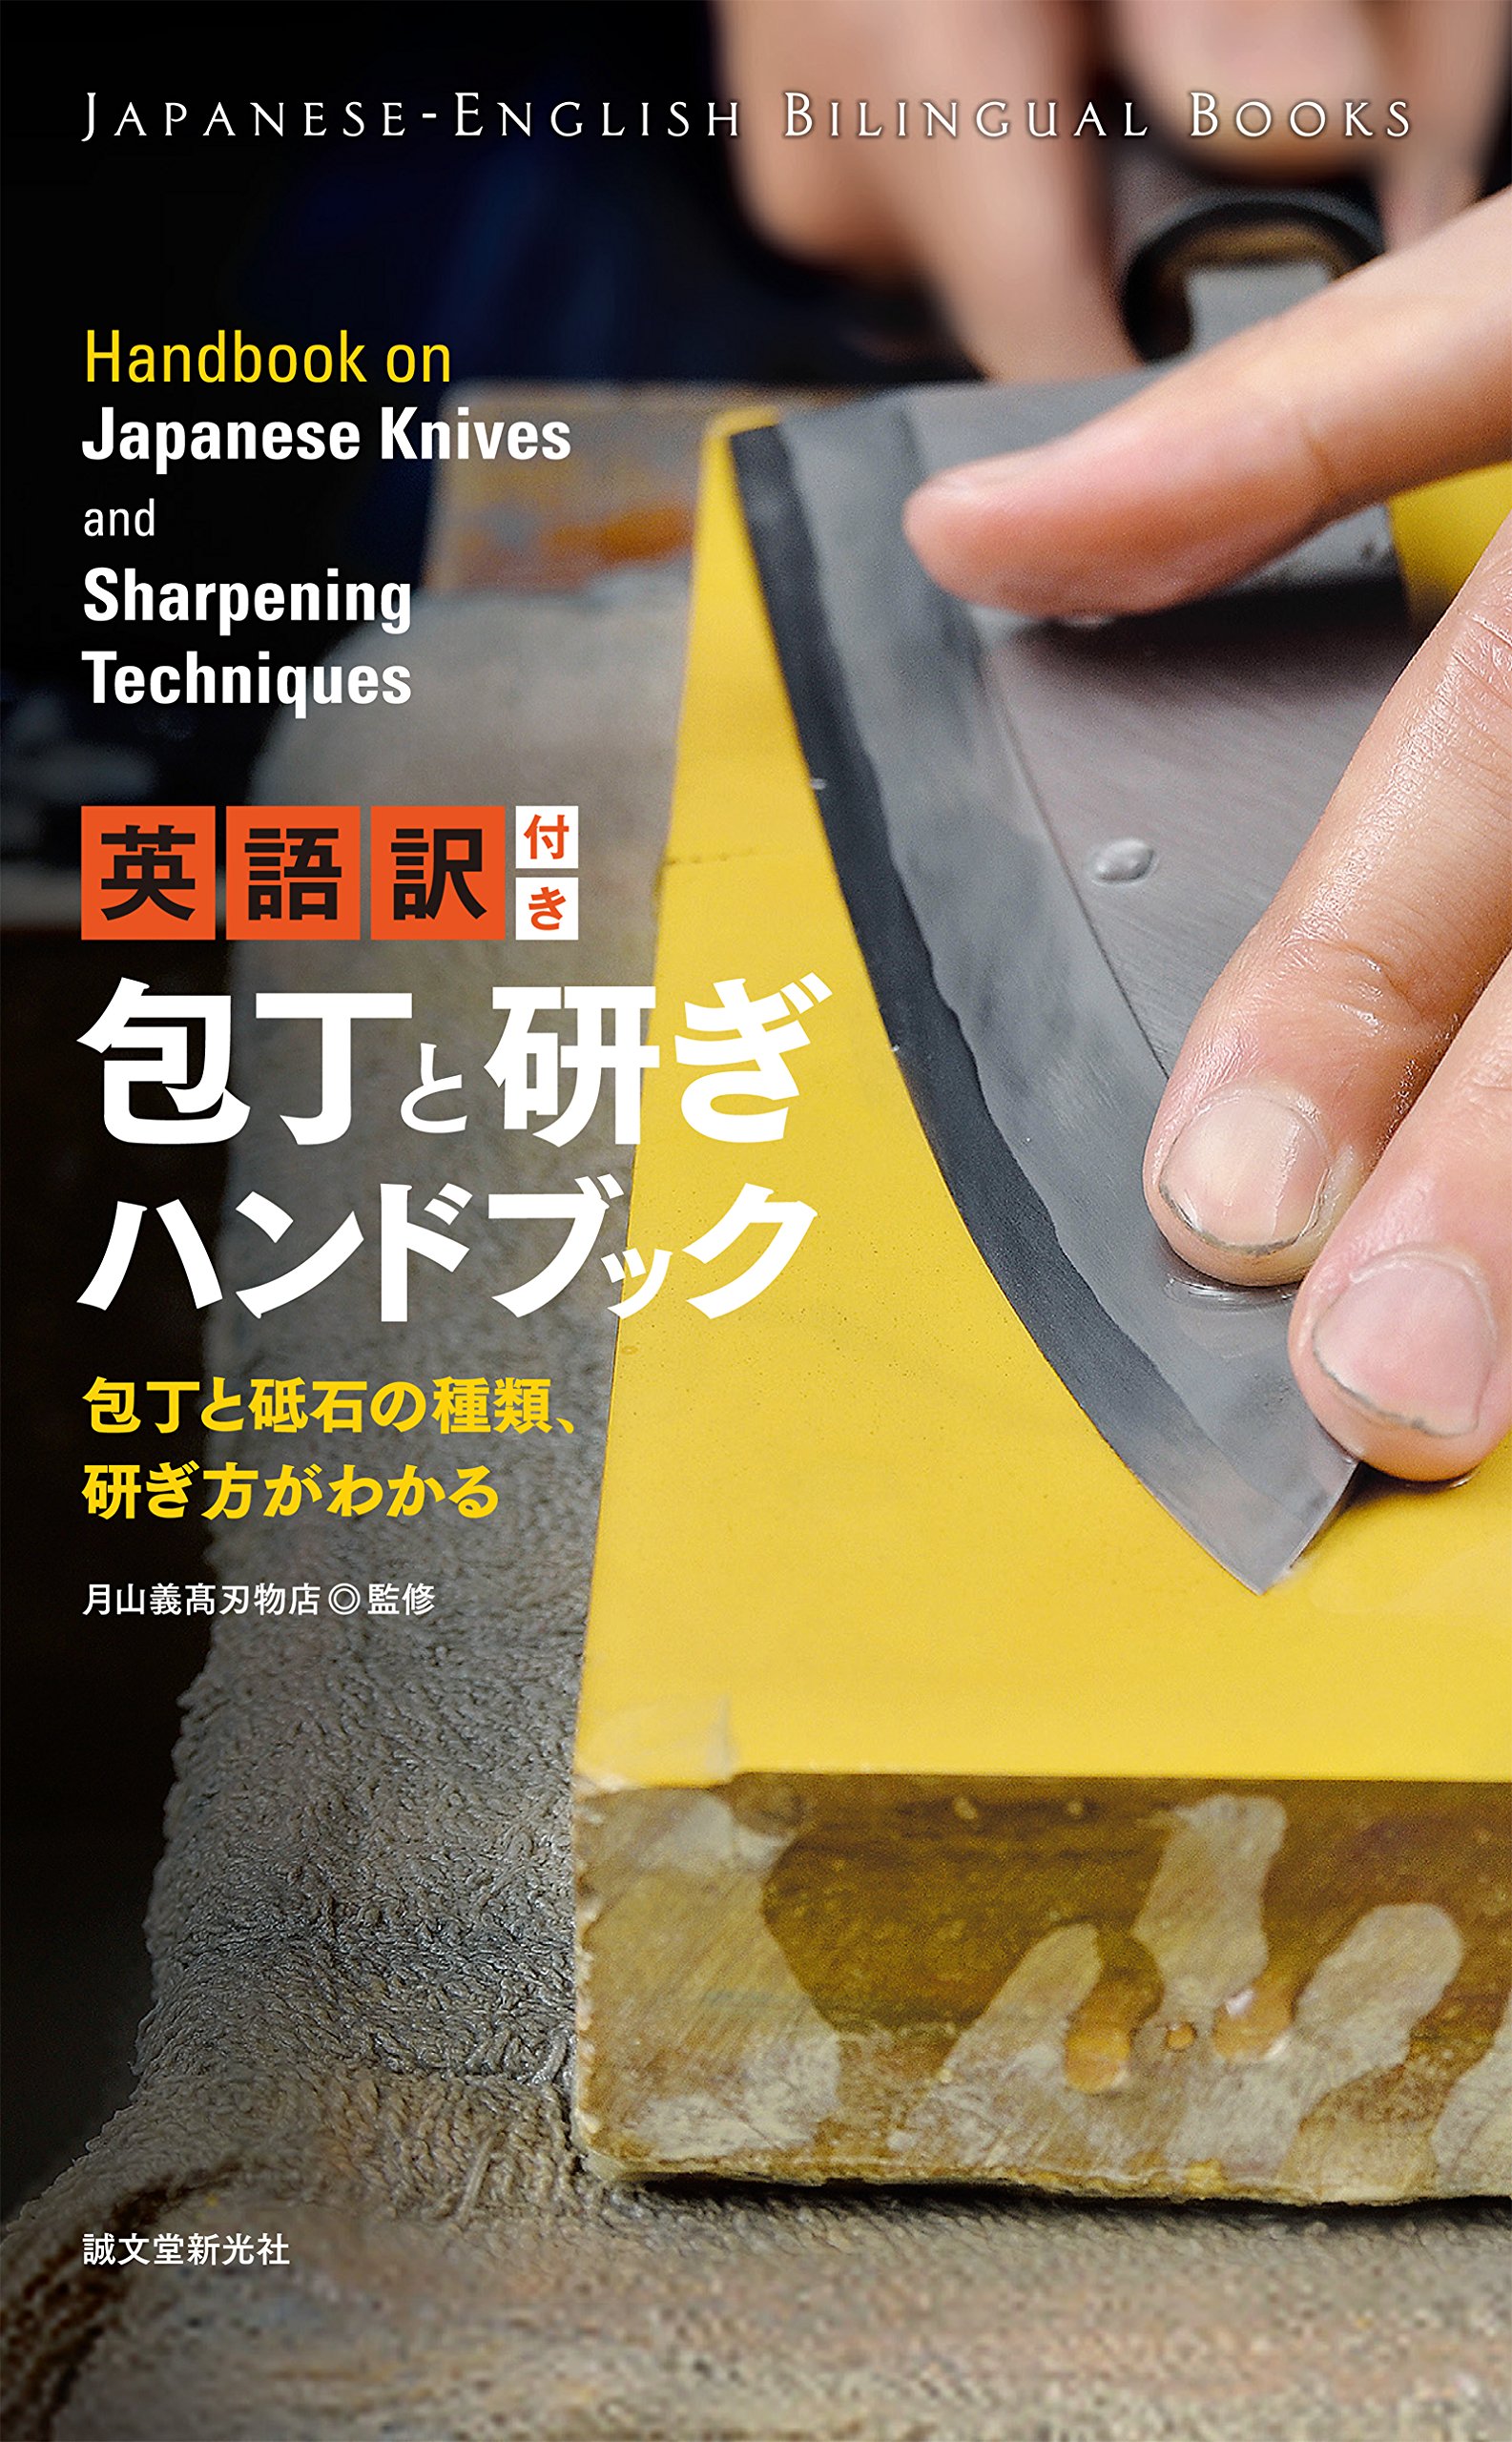 英語訳付き　包丁と研ぎハンドブック　Handbook on Japanese Knives and Sharpening Techniques： 包丁と砥石の種類、研ぎ方がわかる (JAPANESE-ENGLISH BILINGUAL BOOKS) (Japanese Edition)